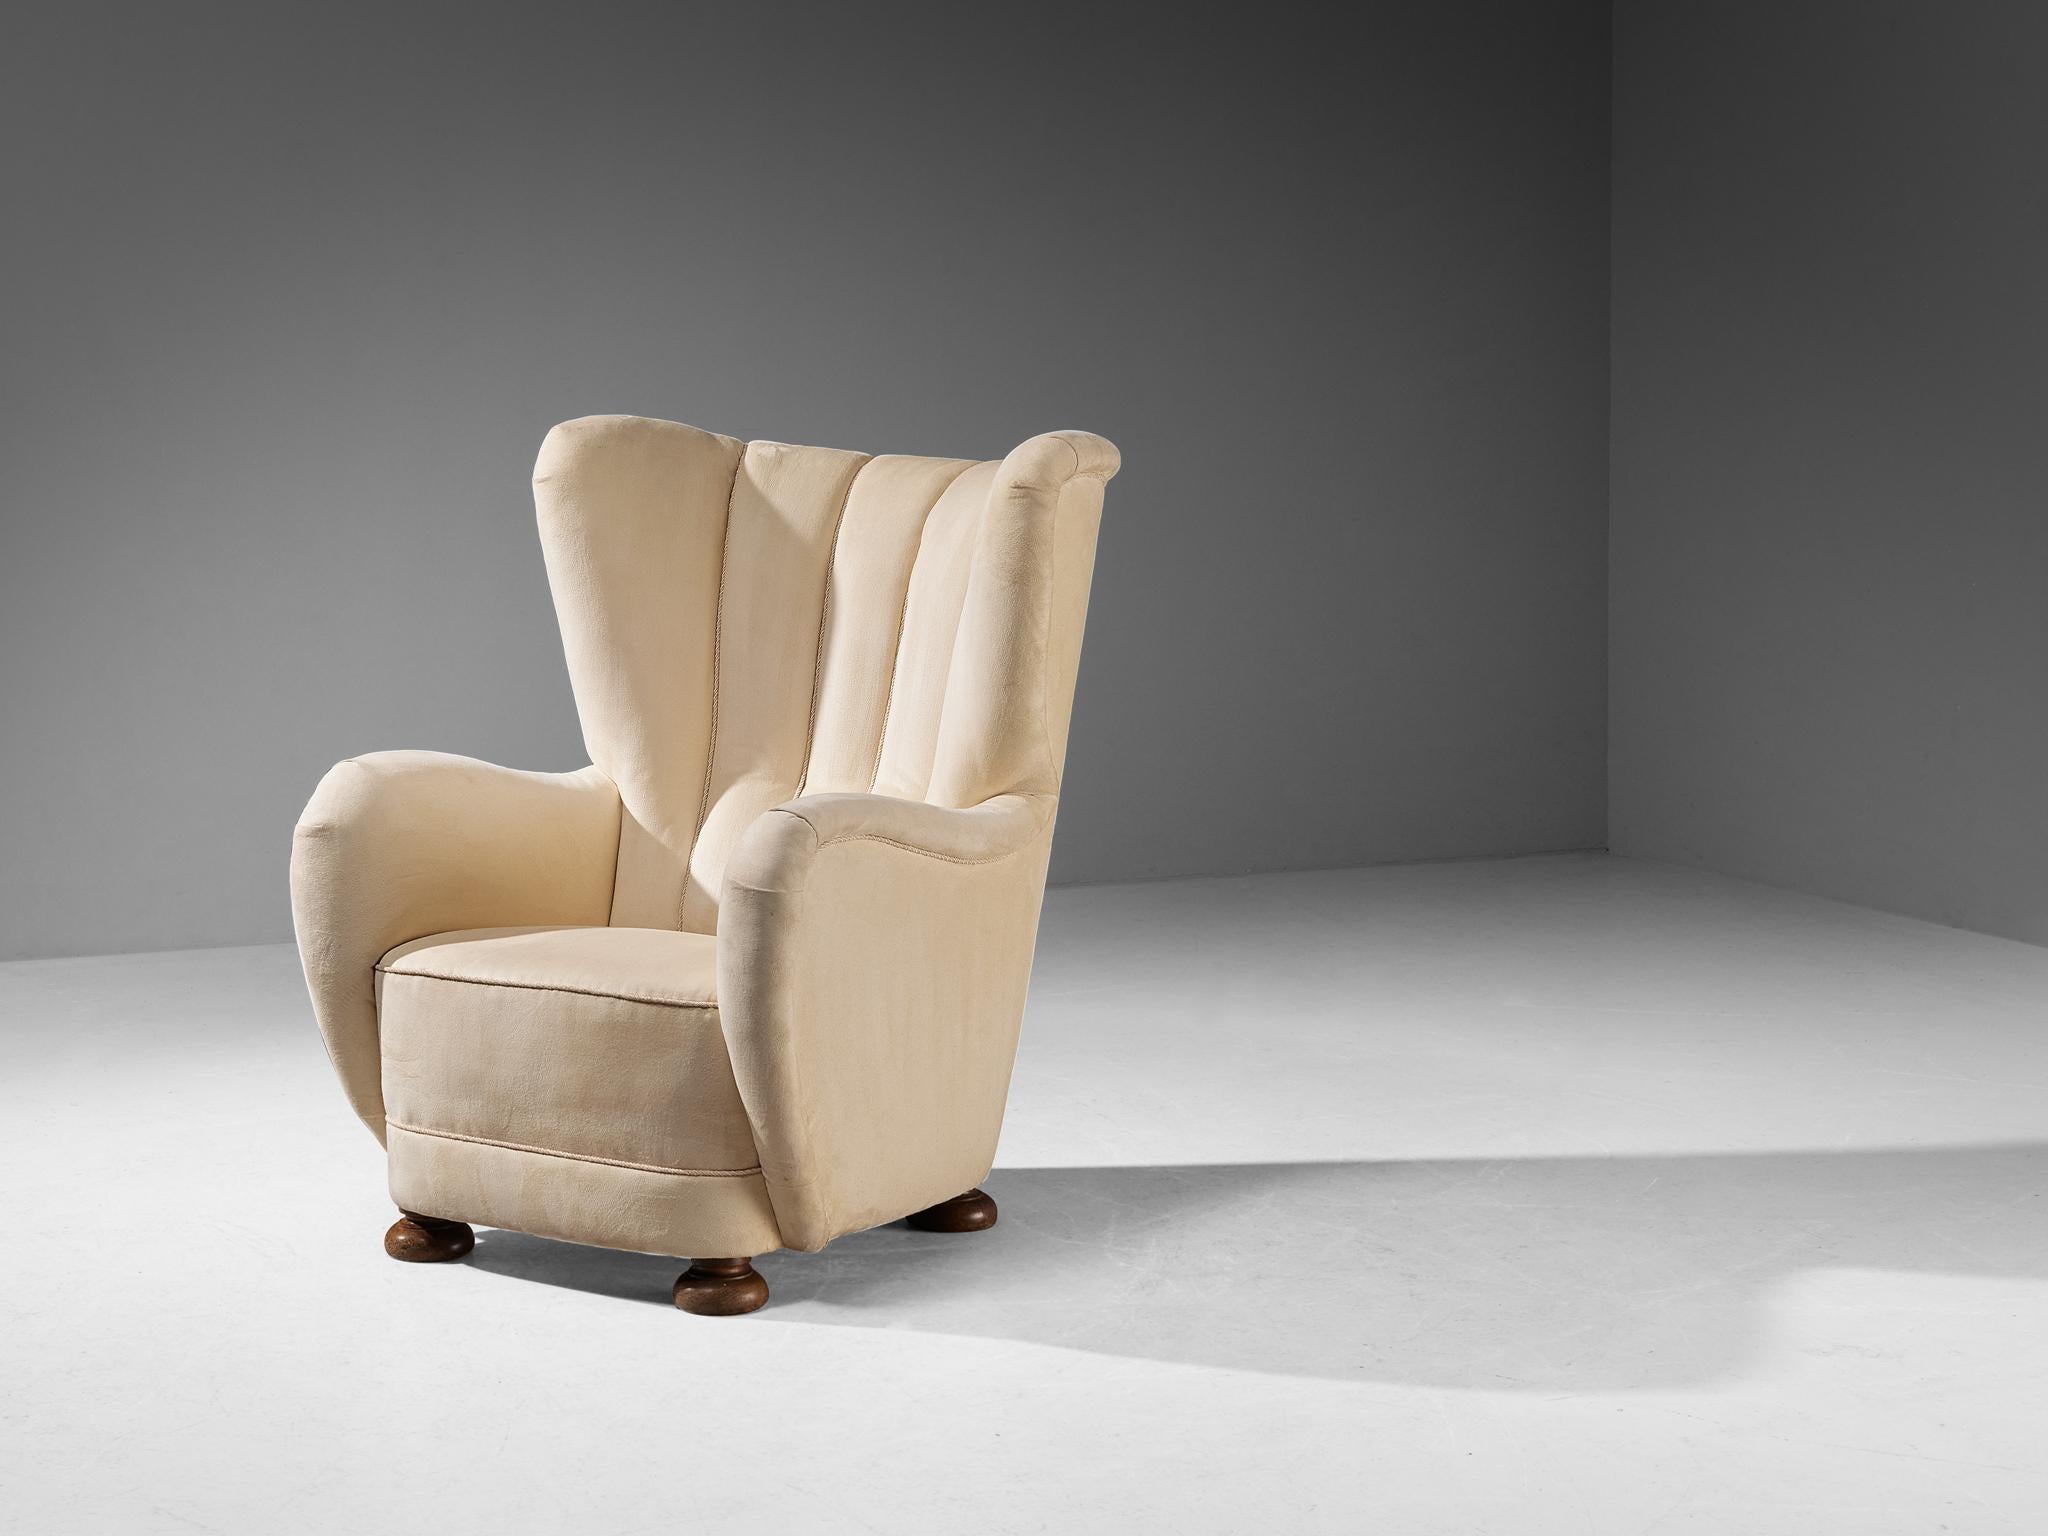 Chaise à dossier, pieds en hêtre teinté, tissu, Danemark, années 1950. 

Cet archétype de la chaise à oreilles des années 1950 est à la fois extrêmement confortable et agréable à regarder. Cette chaise facile avec des pieds ronds et décoratifs en